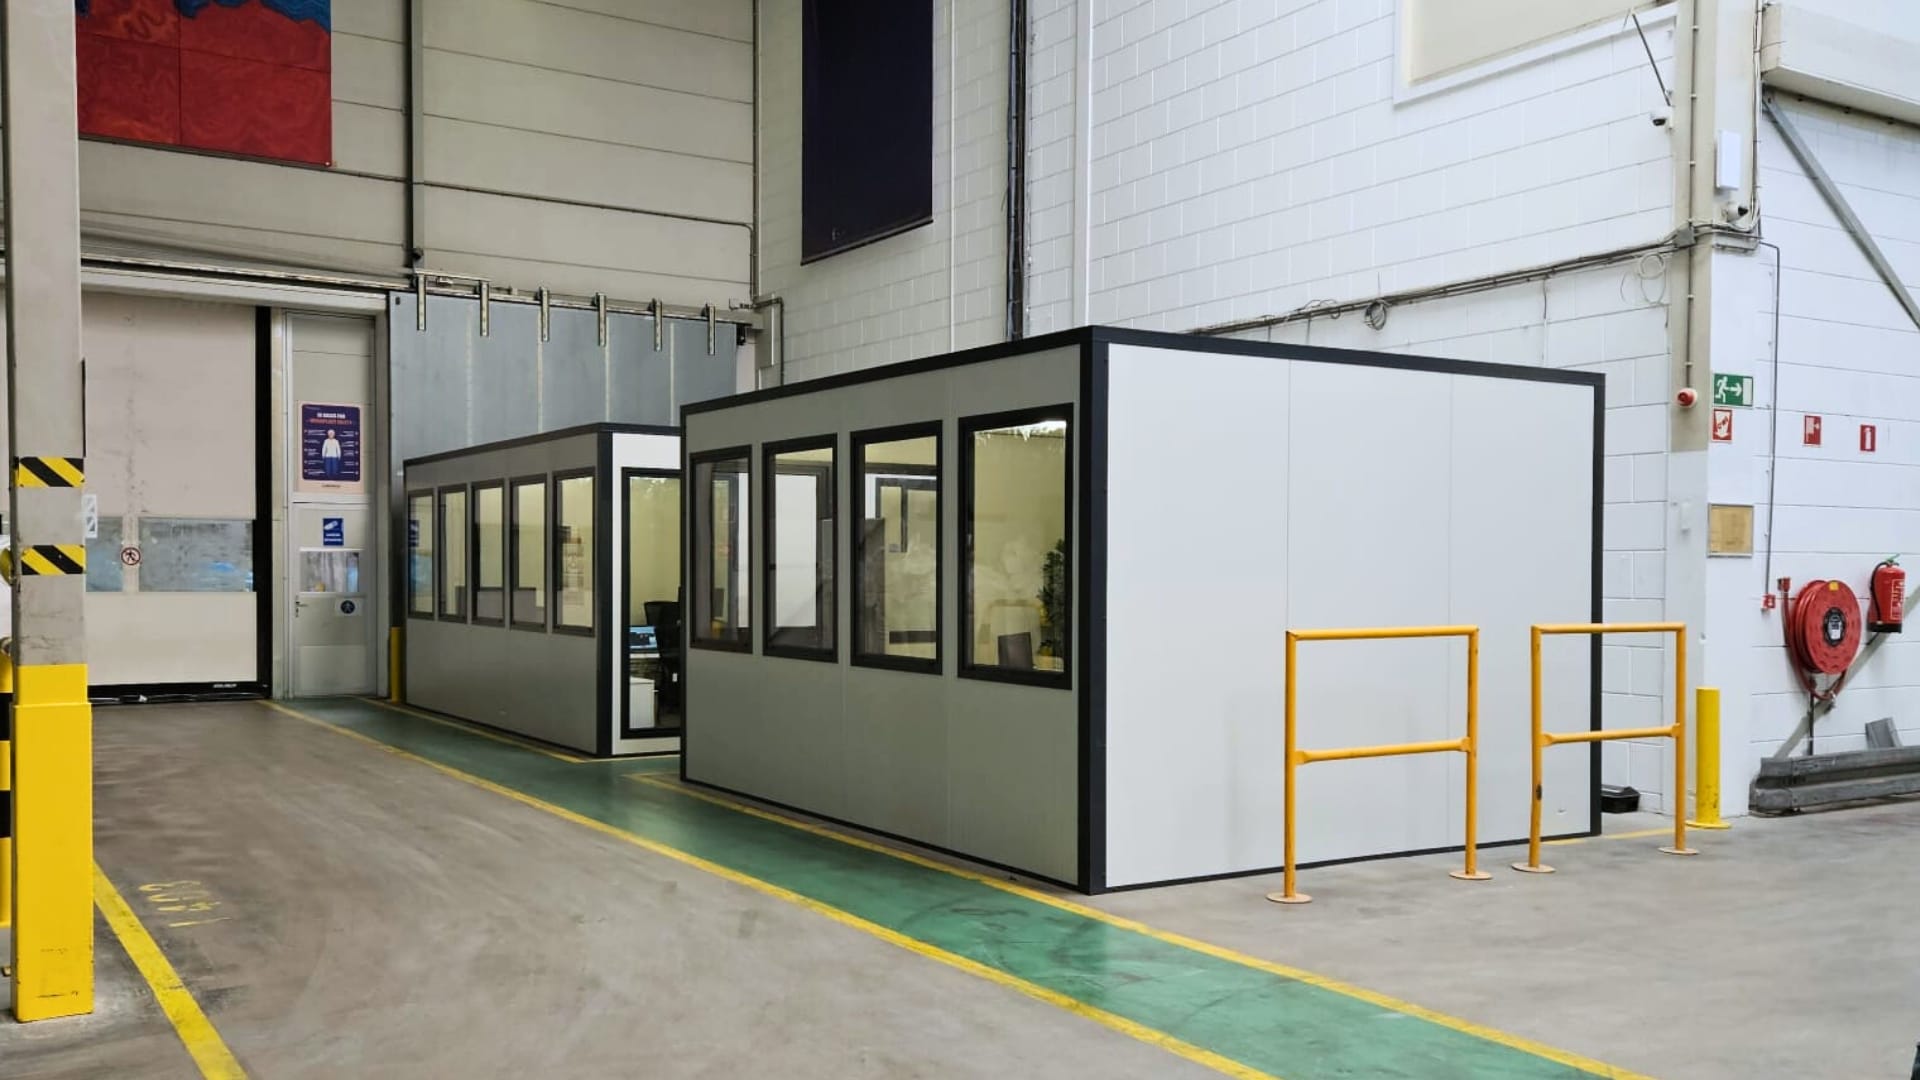 Kantoorunit Smart van Umfeldt met wit aluminium panelen en antraciet grijze kozijnen, gemonteerd in een productieomgeving